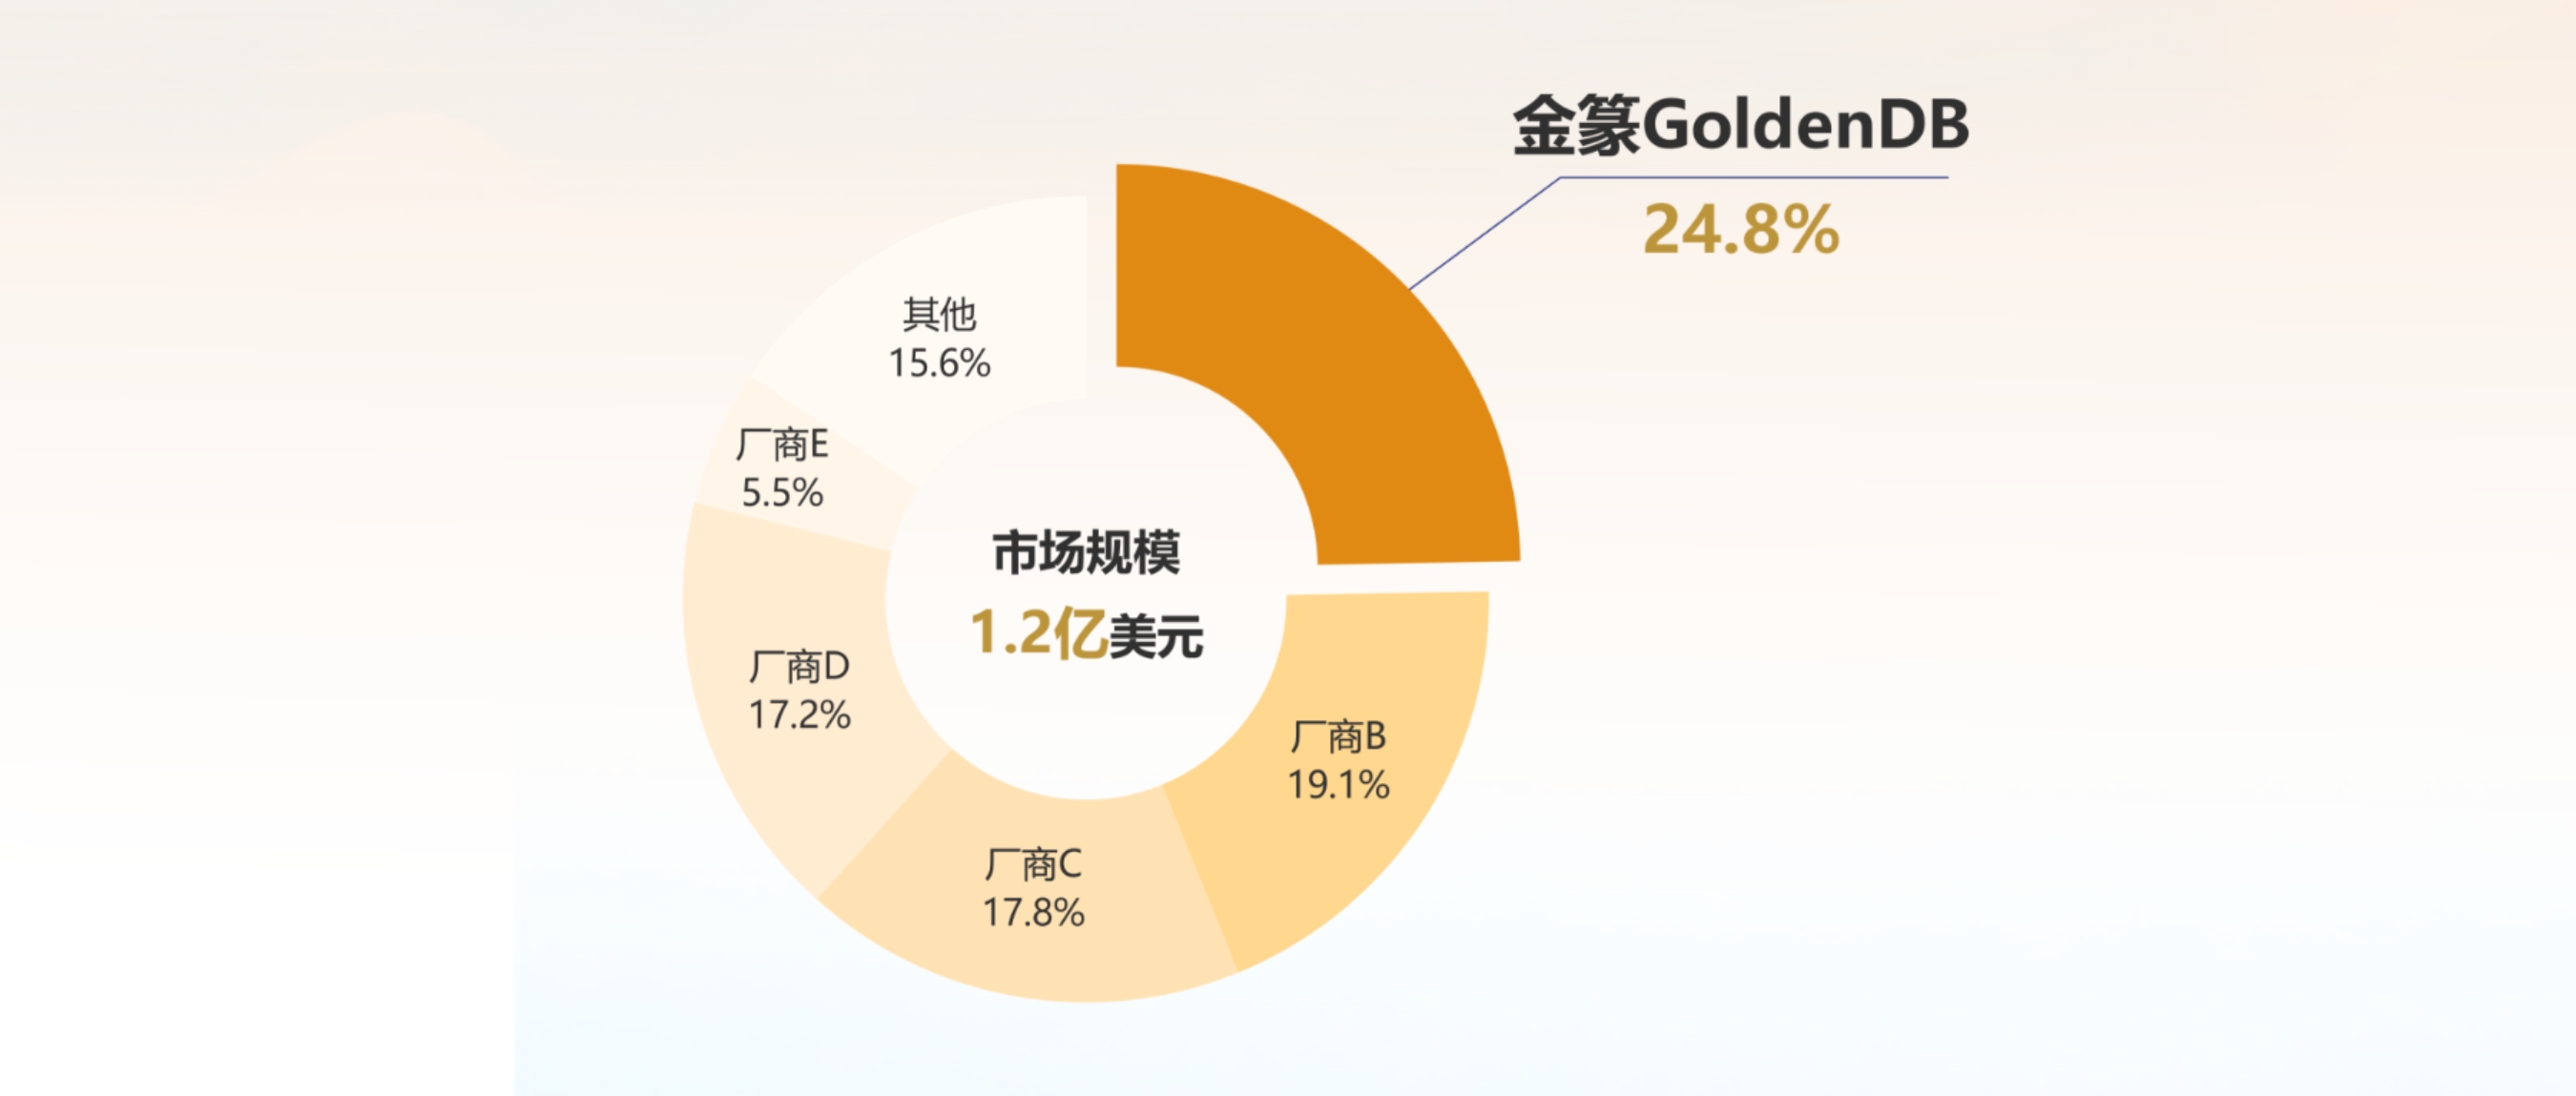 中兴通讯金篆GoldenDB金融核心系统市场排名第一